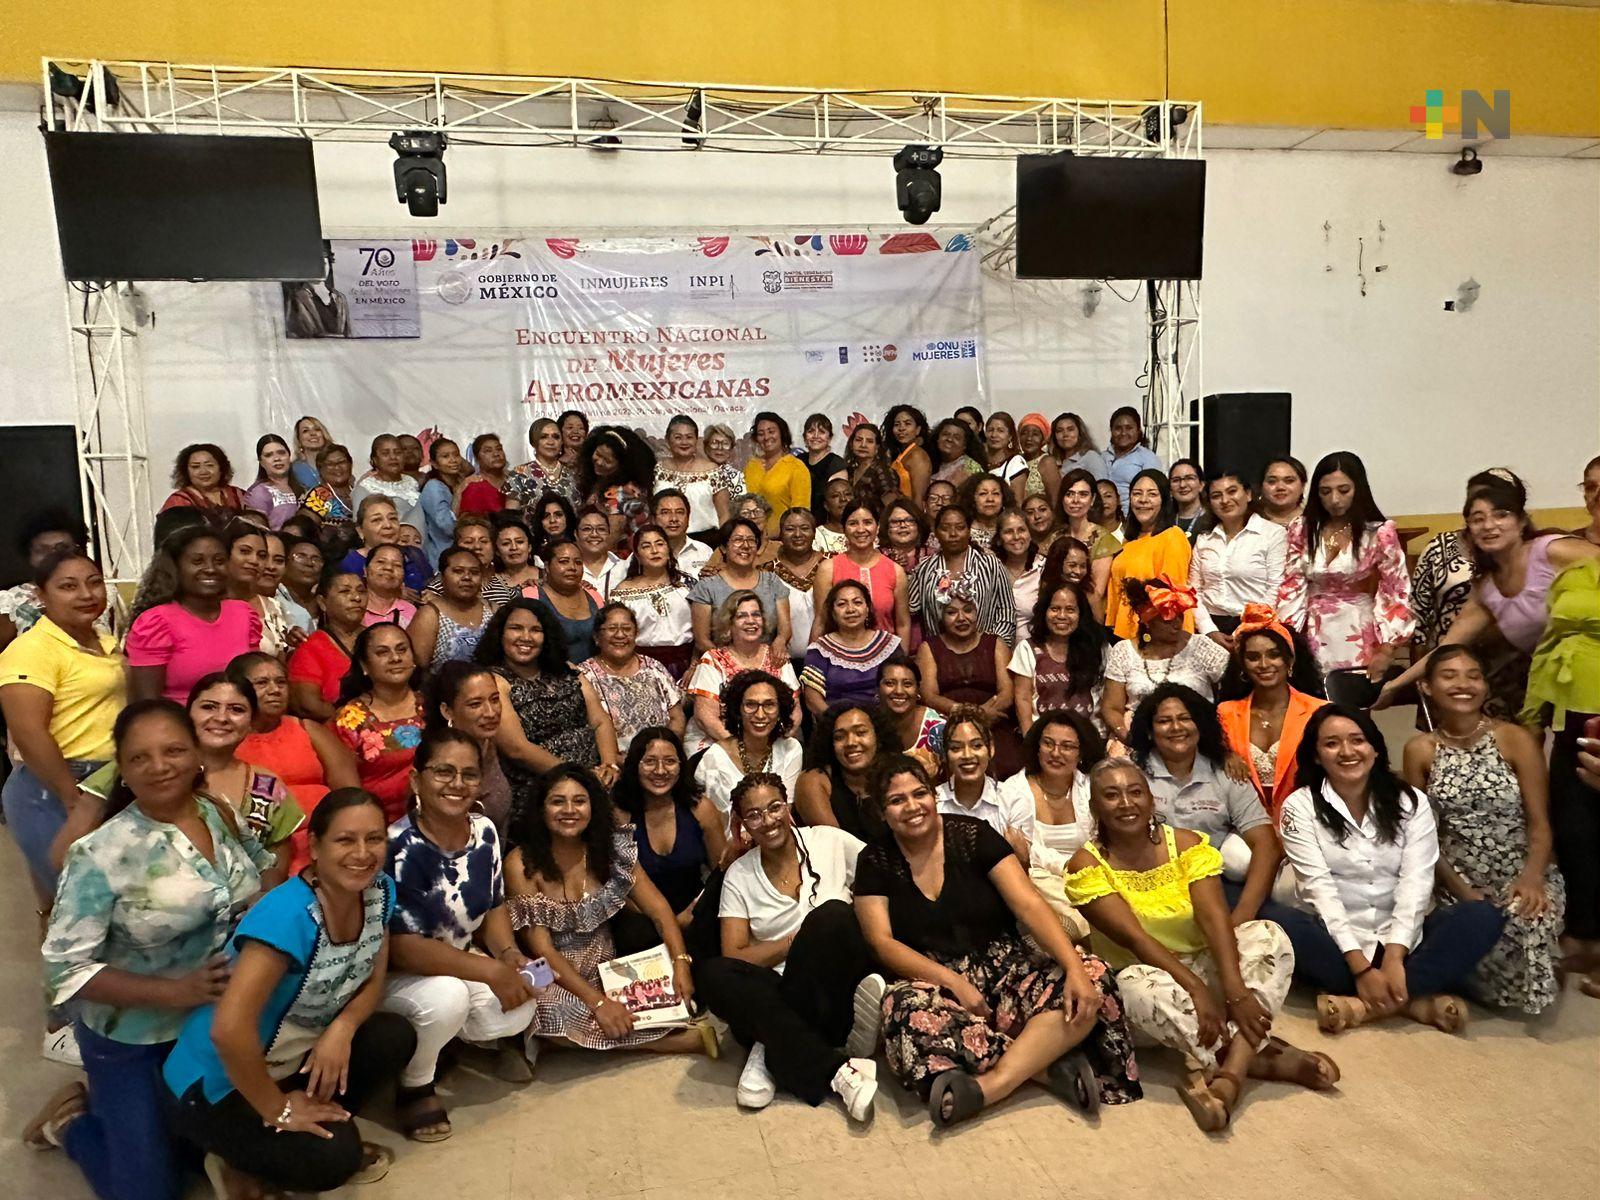 Destacan veracruzanas en el Encuentro Nacional de Mujeres Afromexicanas: Eric Cisneros